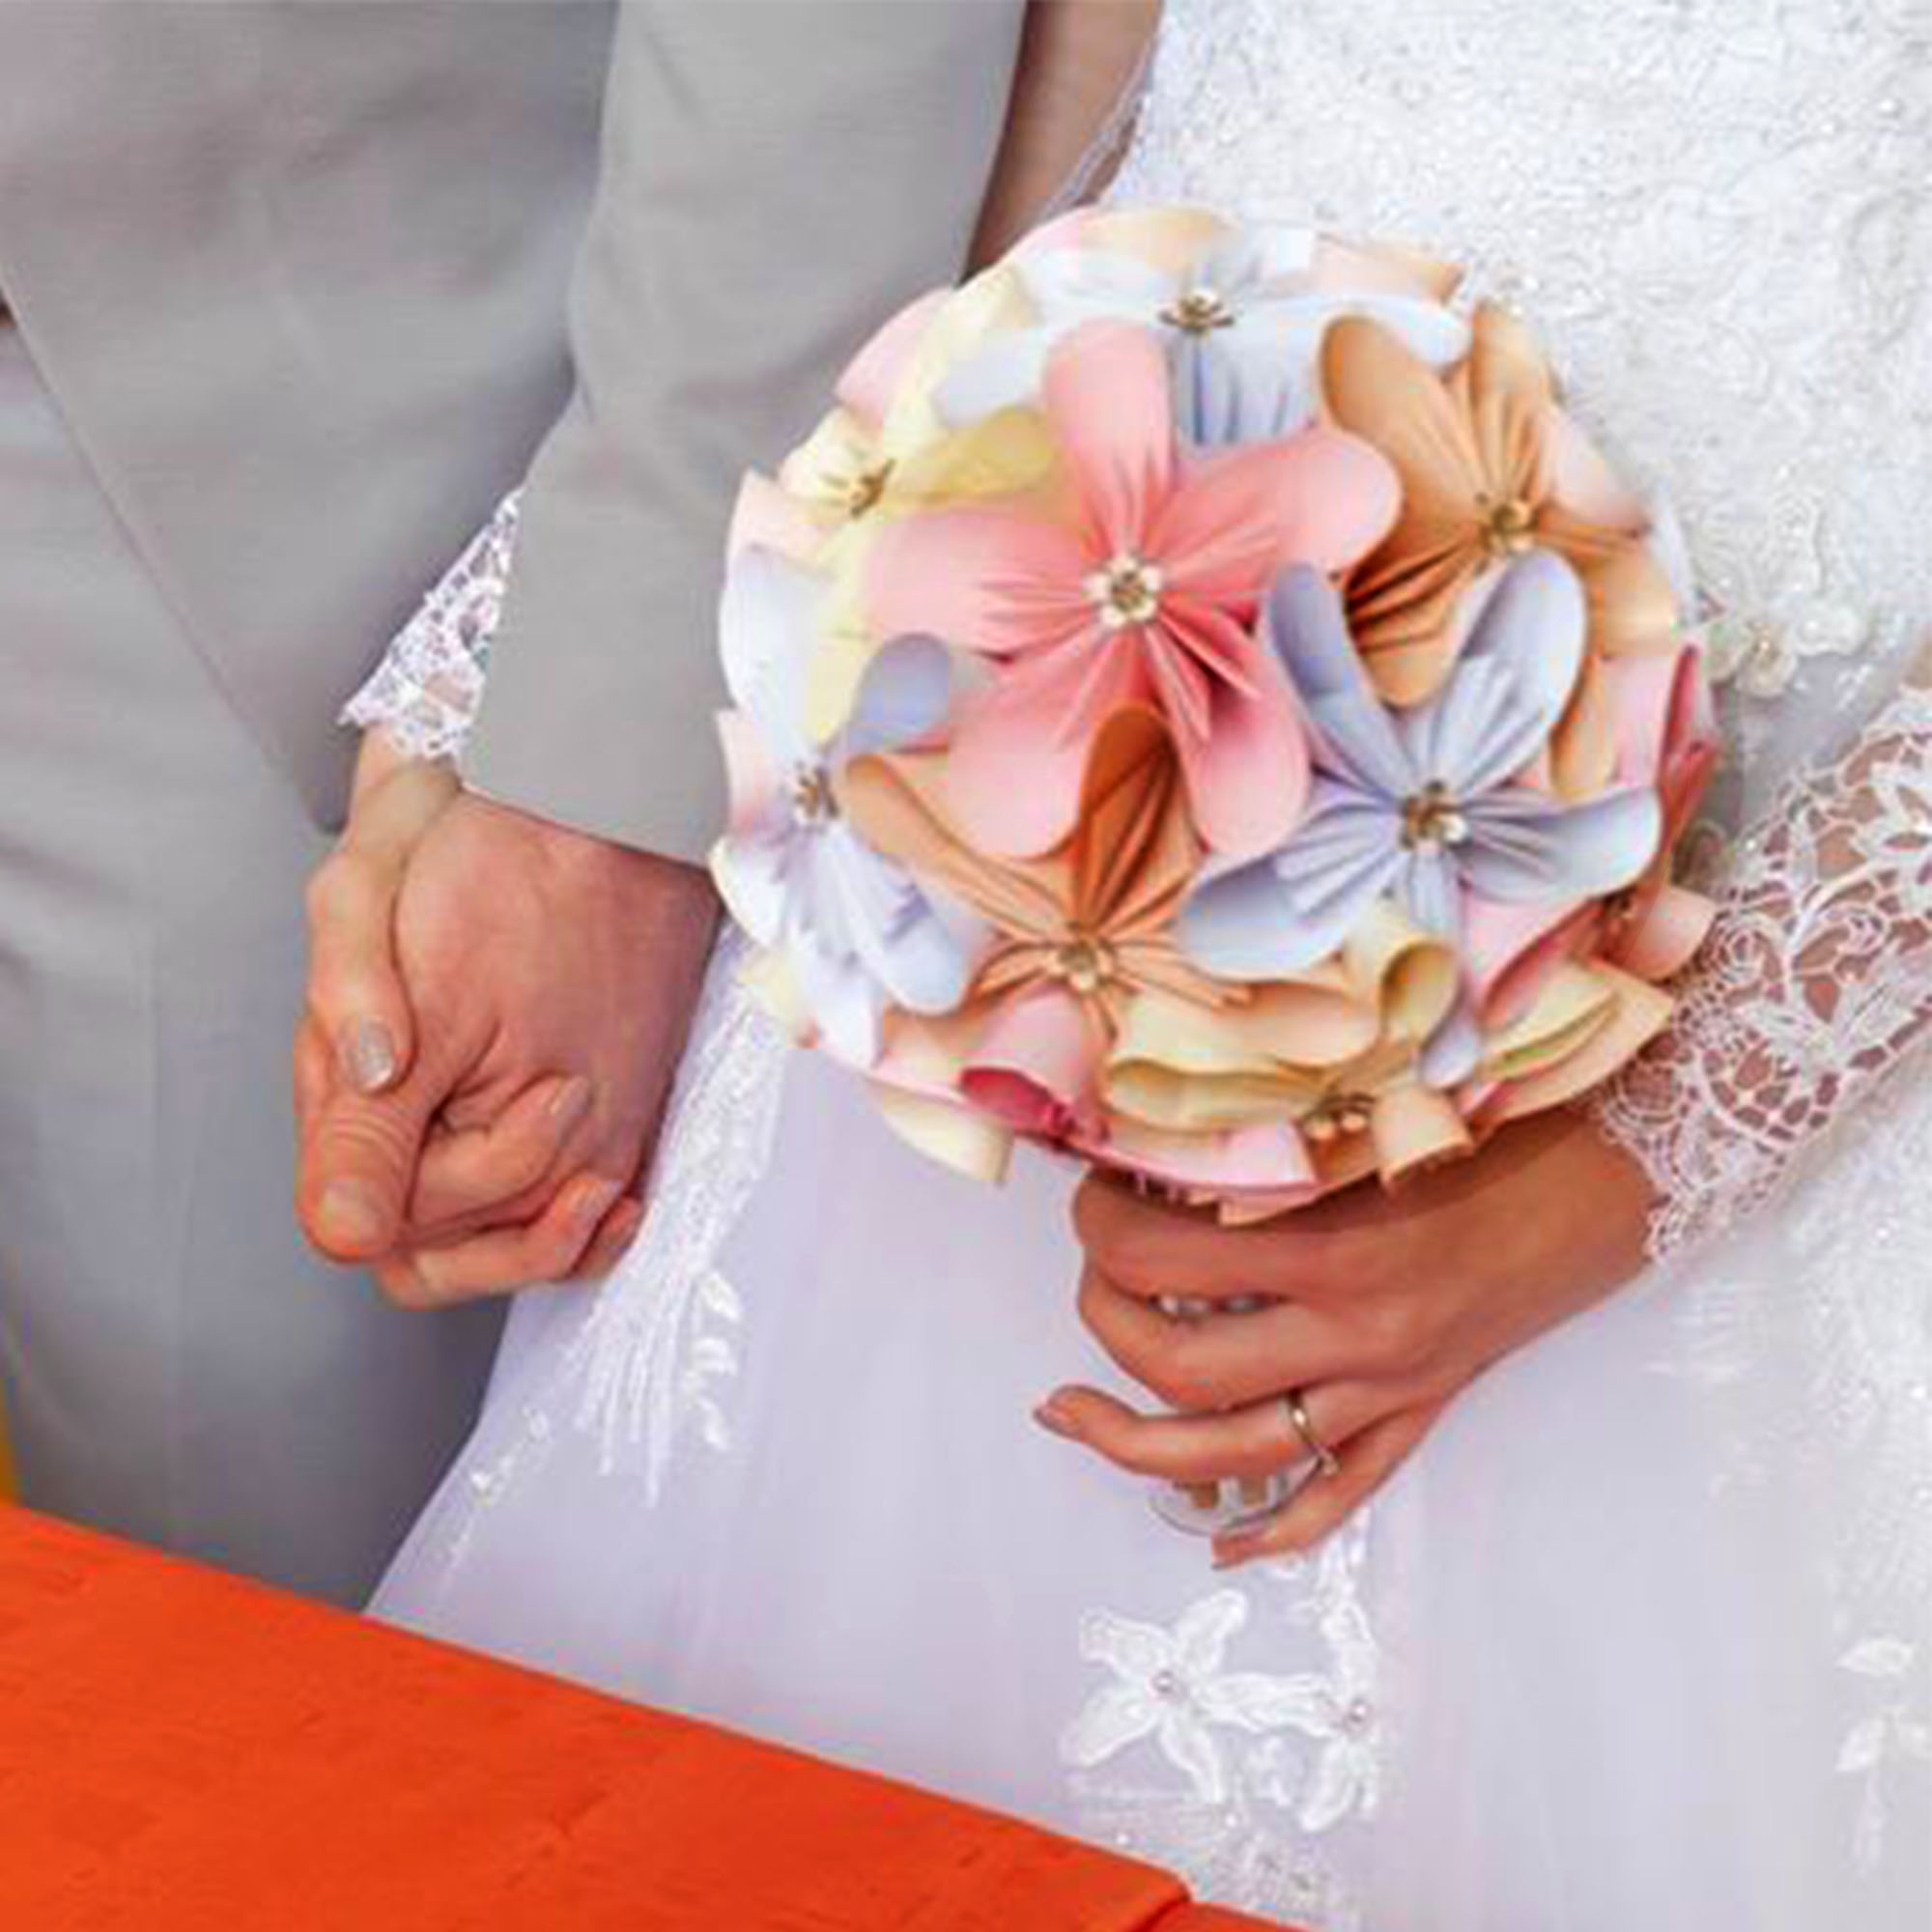 Mariage civil : Bouquet ou pas ? Réponses et conseils avisés